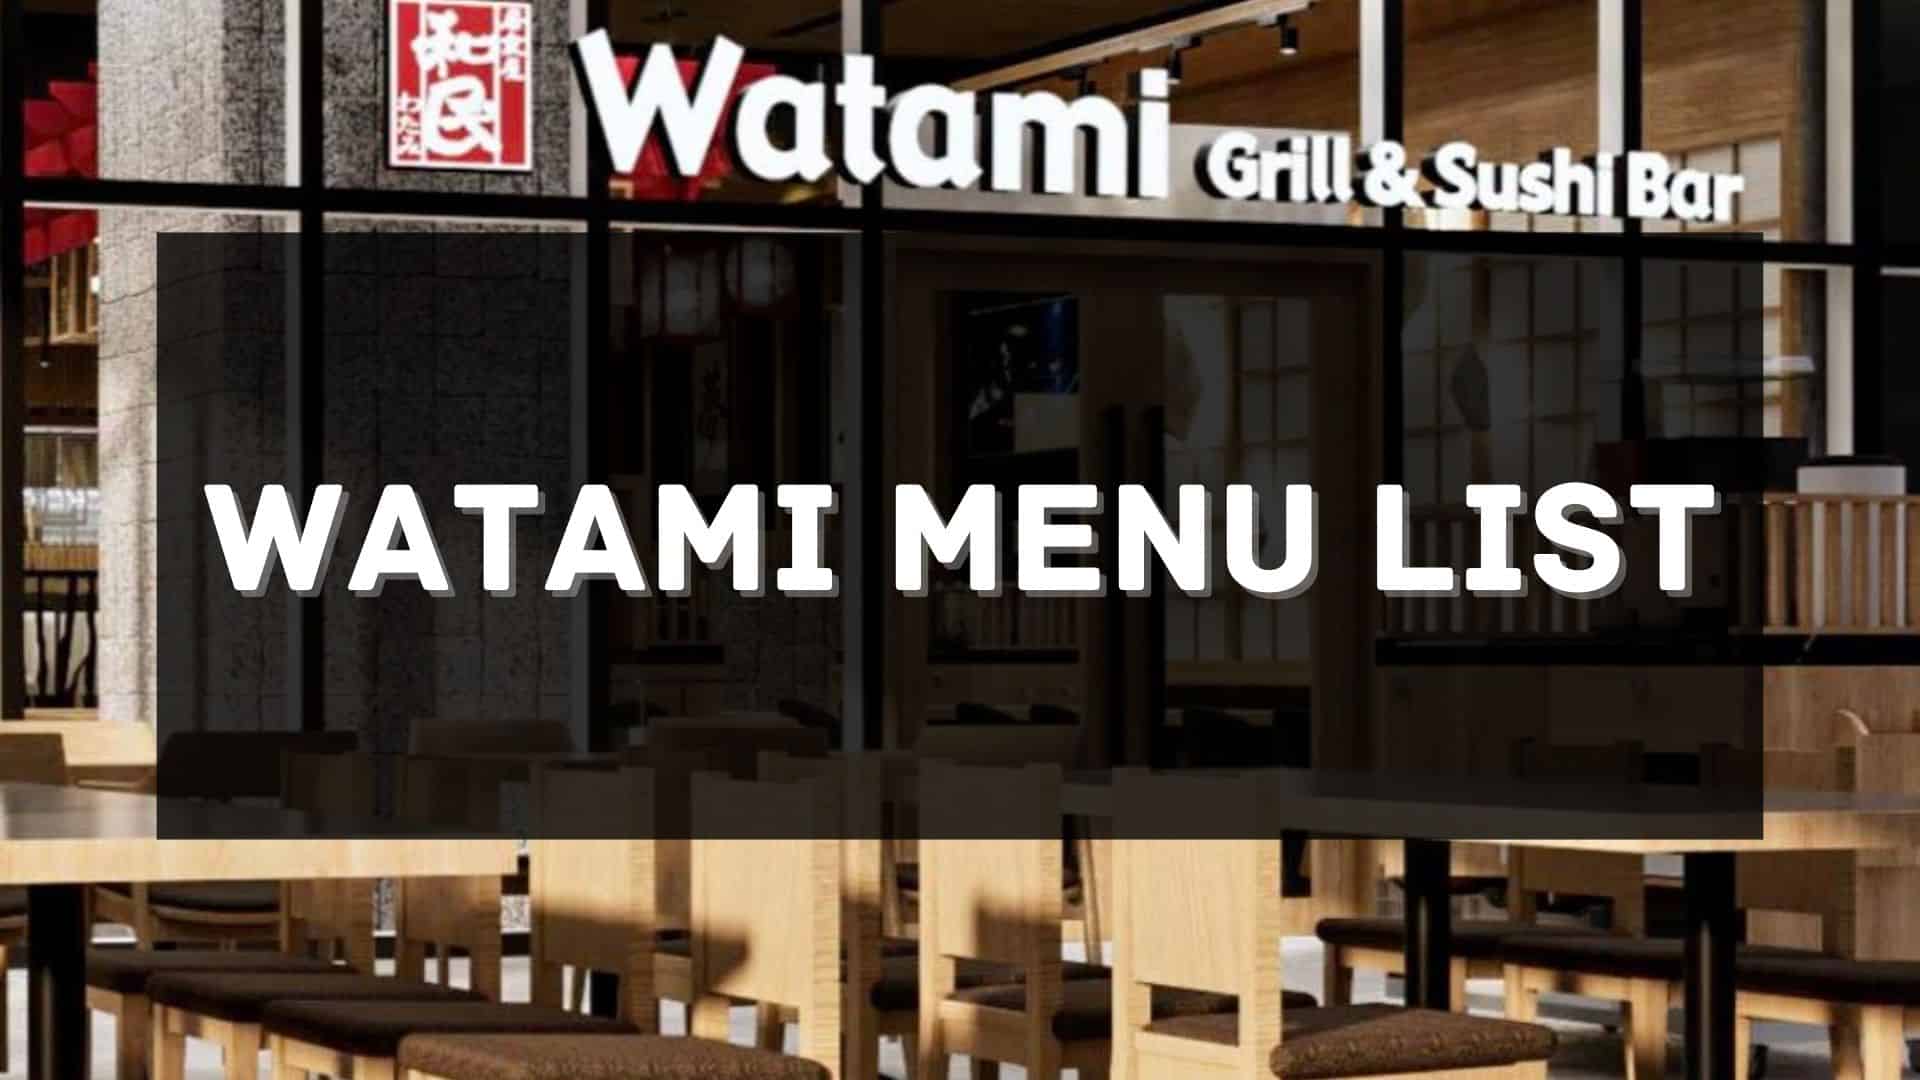 watami menu prices philippines